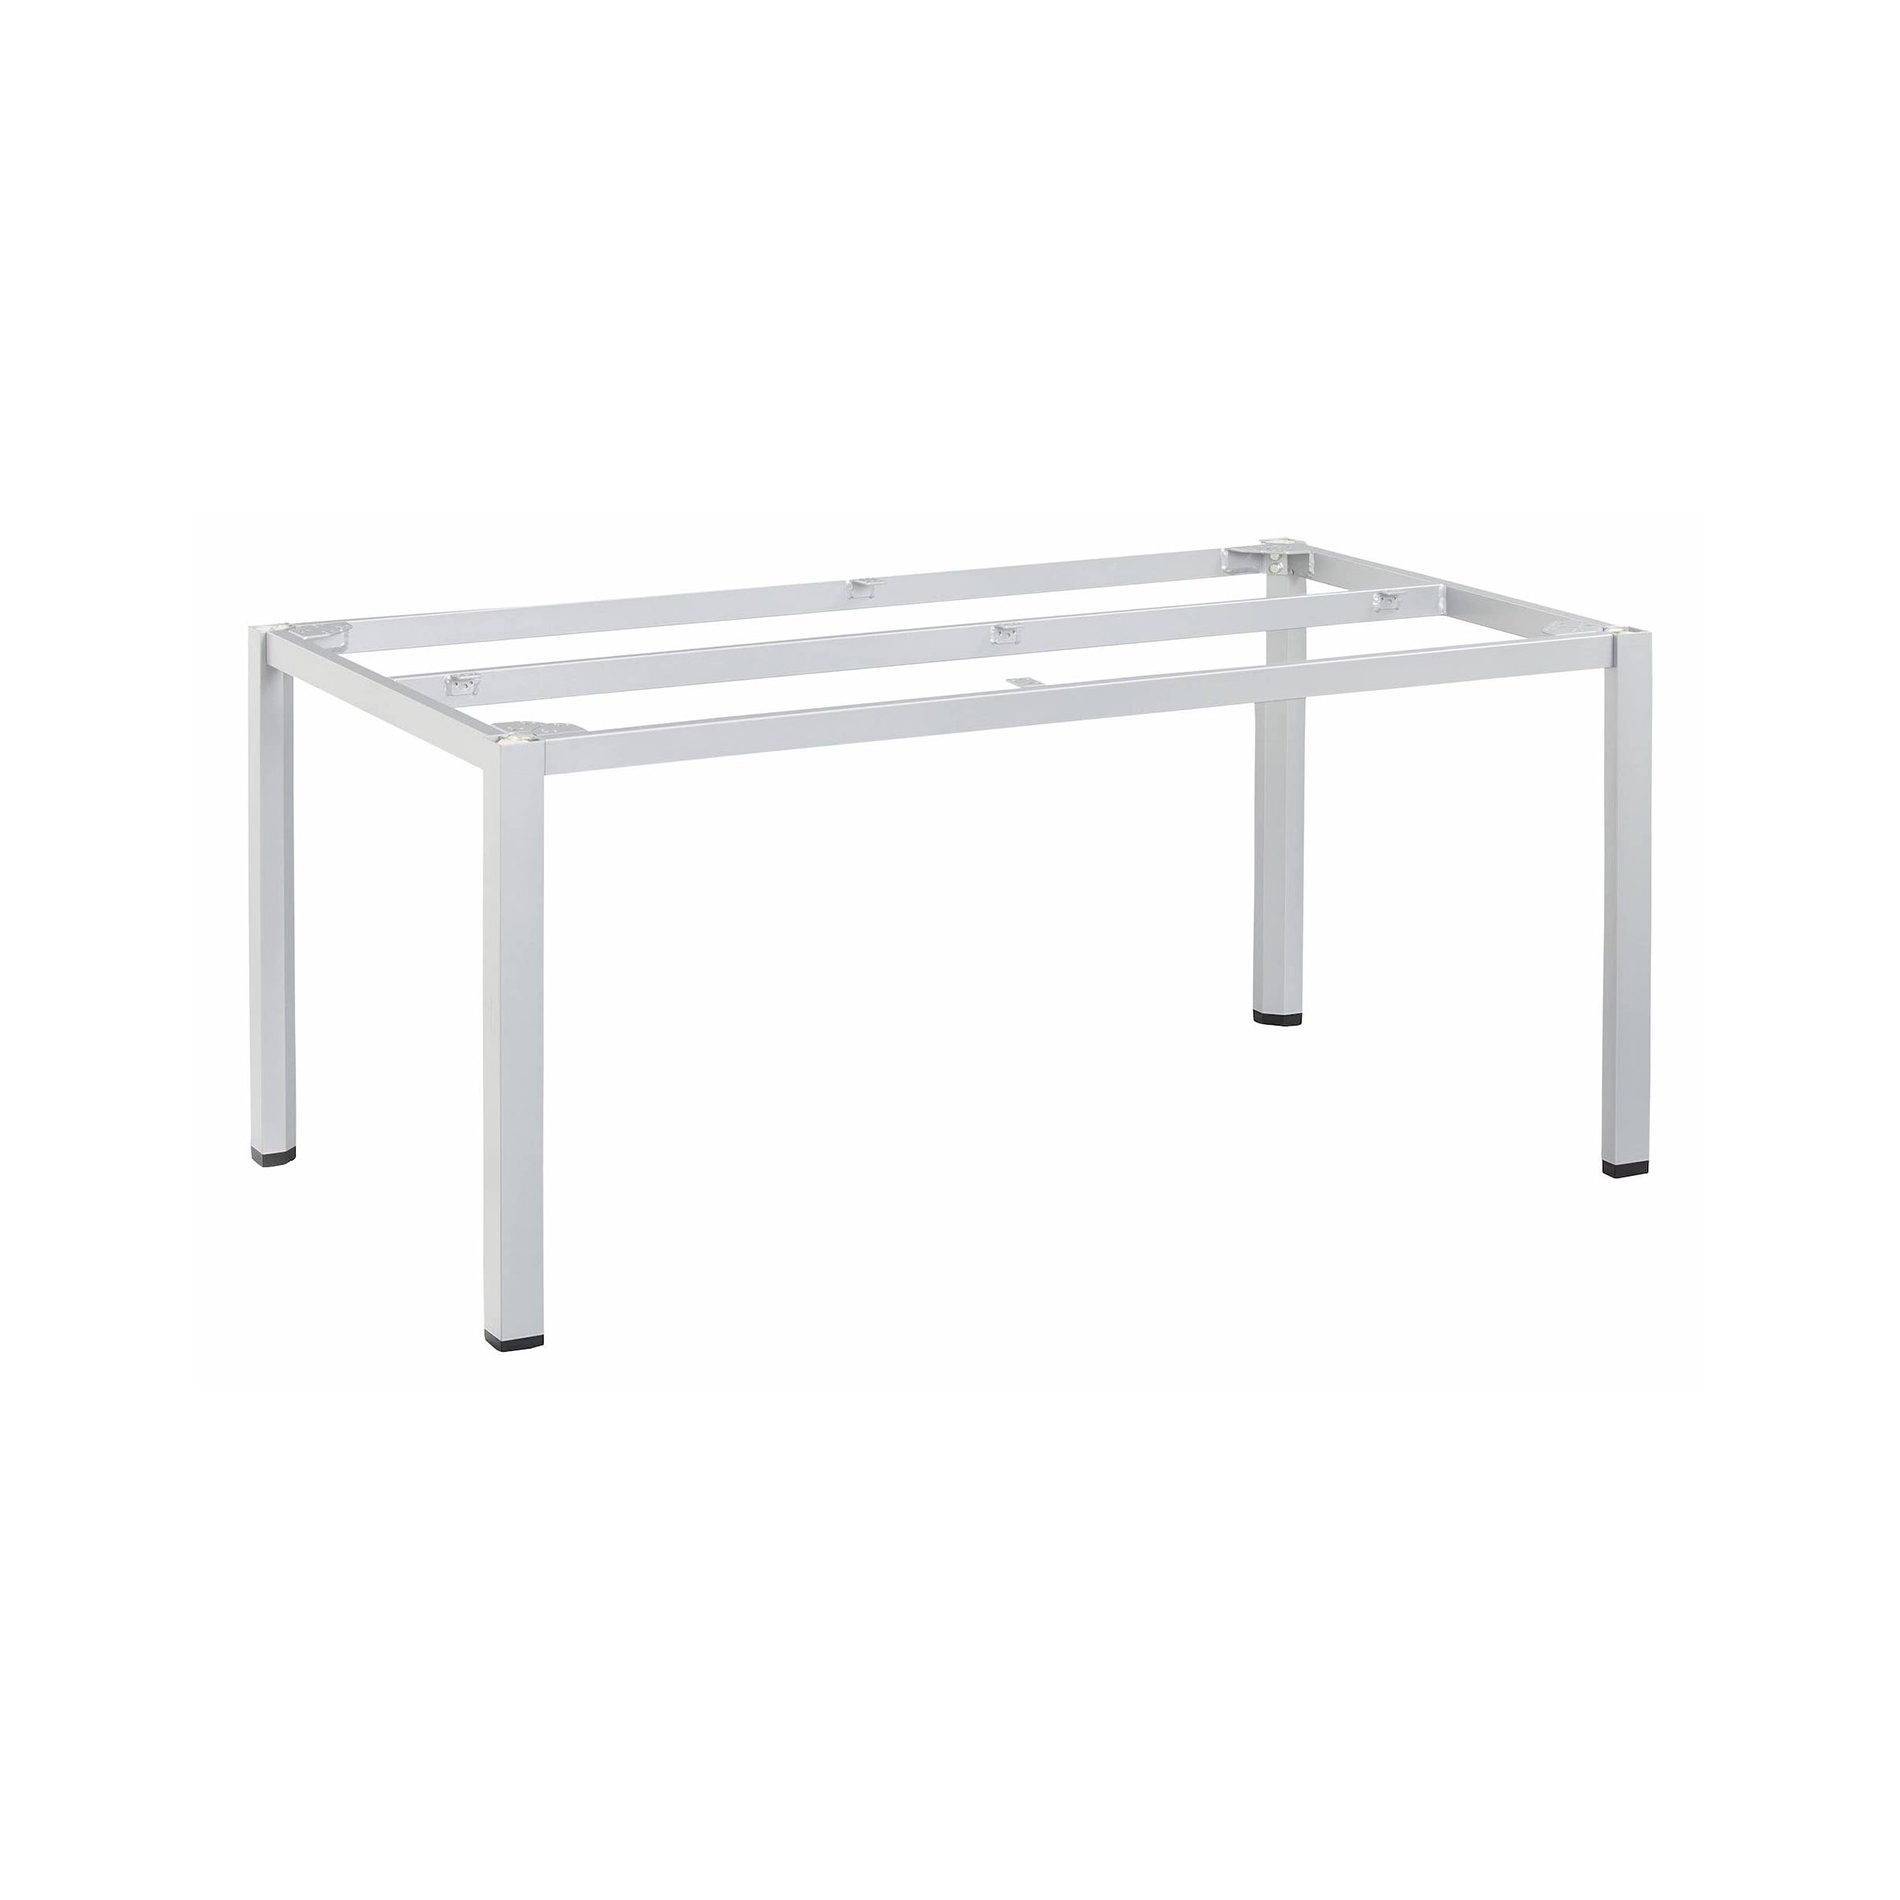 Kettler "Cubic" Tischgestell 180x95 cm, Aluminium silber